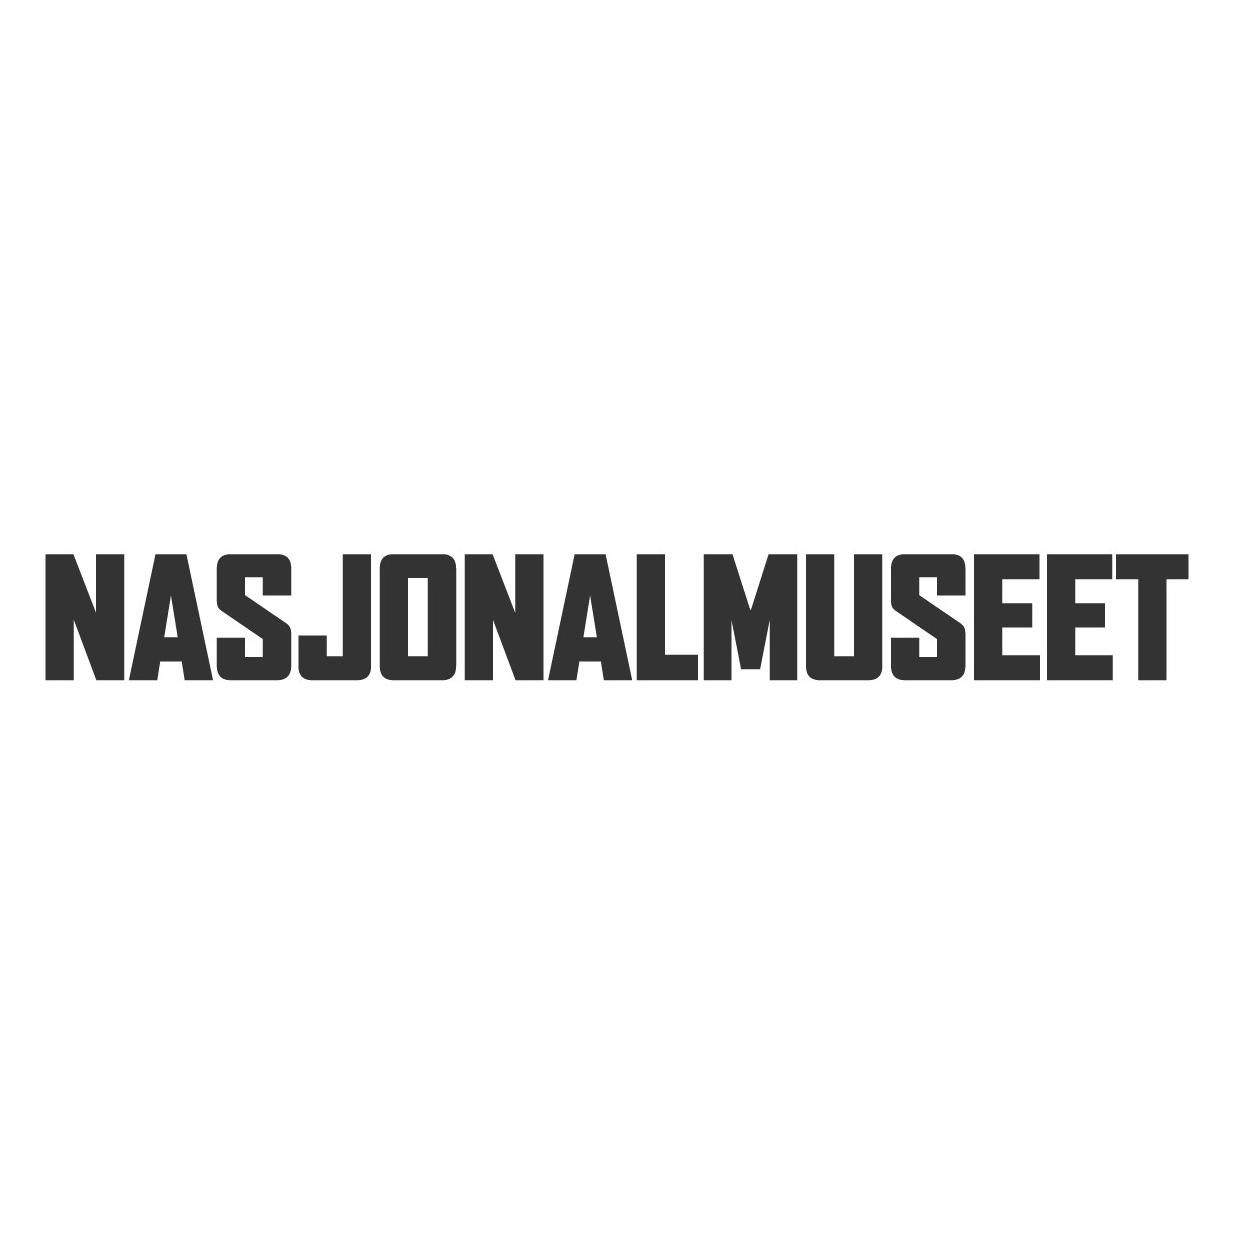 Nasjonalmuseet logo.jpg